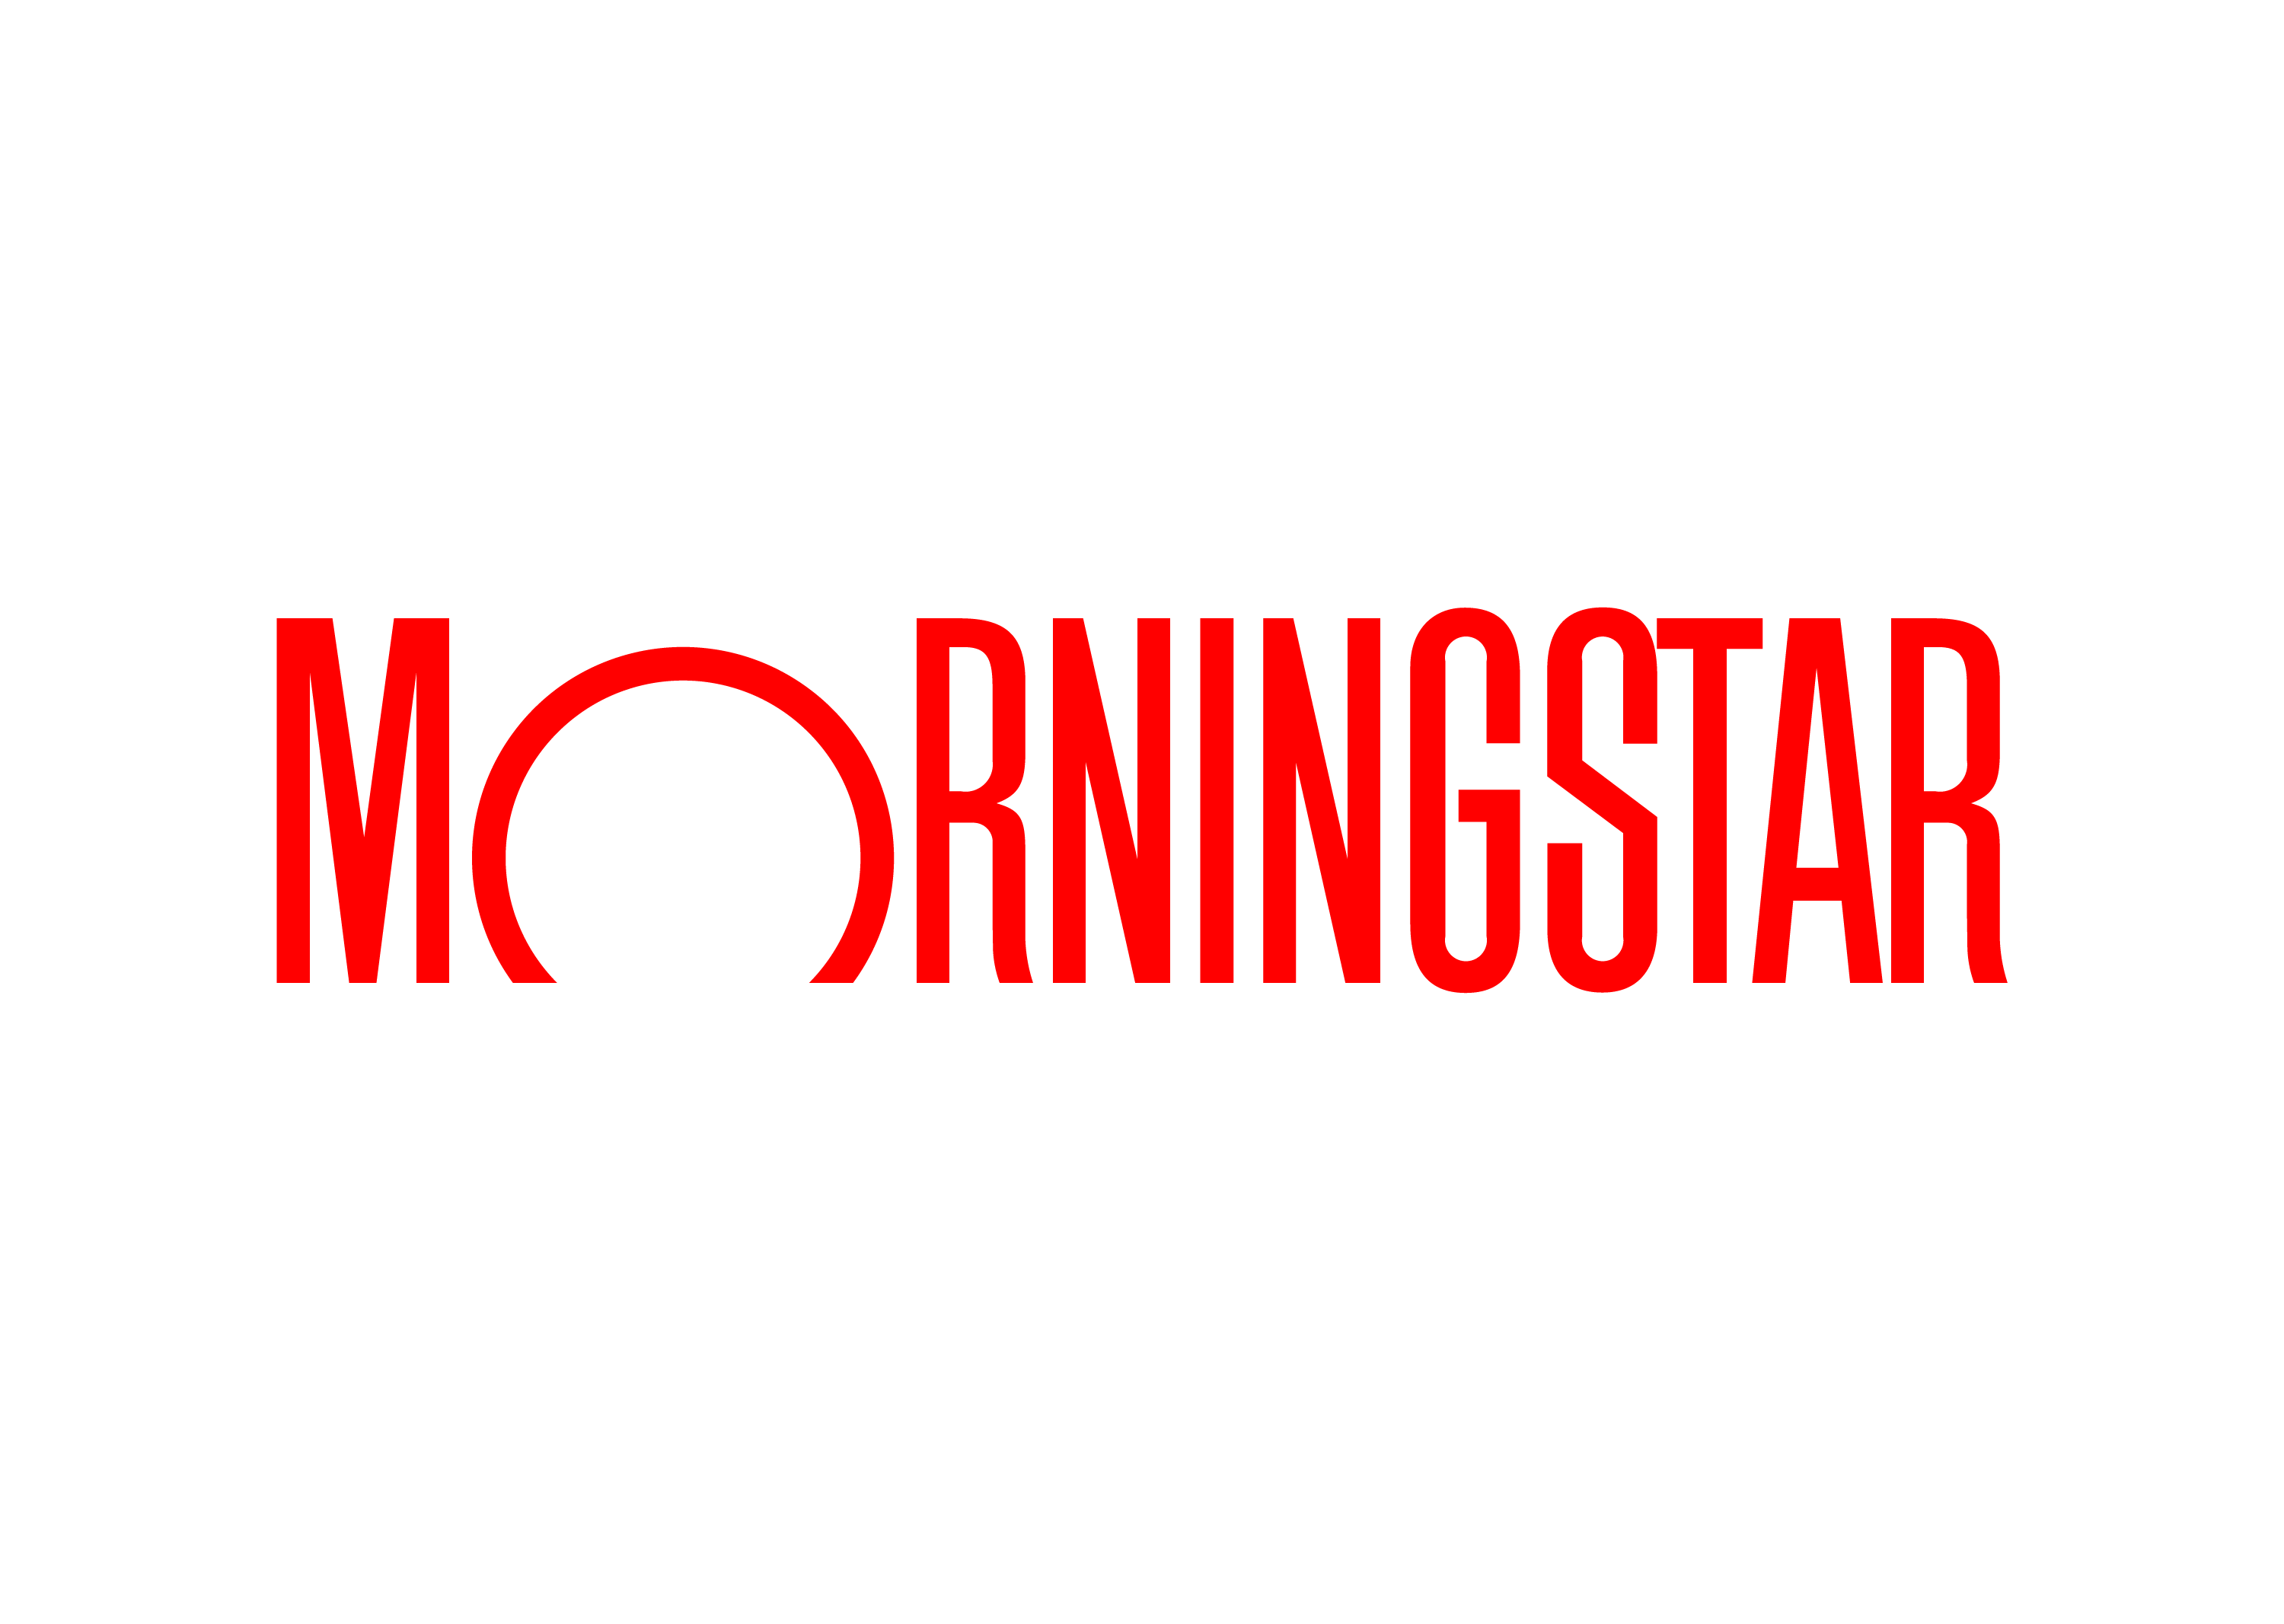 “Morningstar”